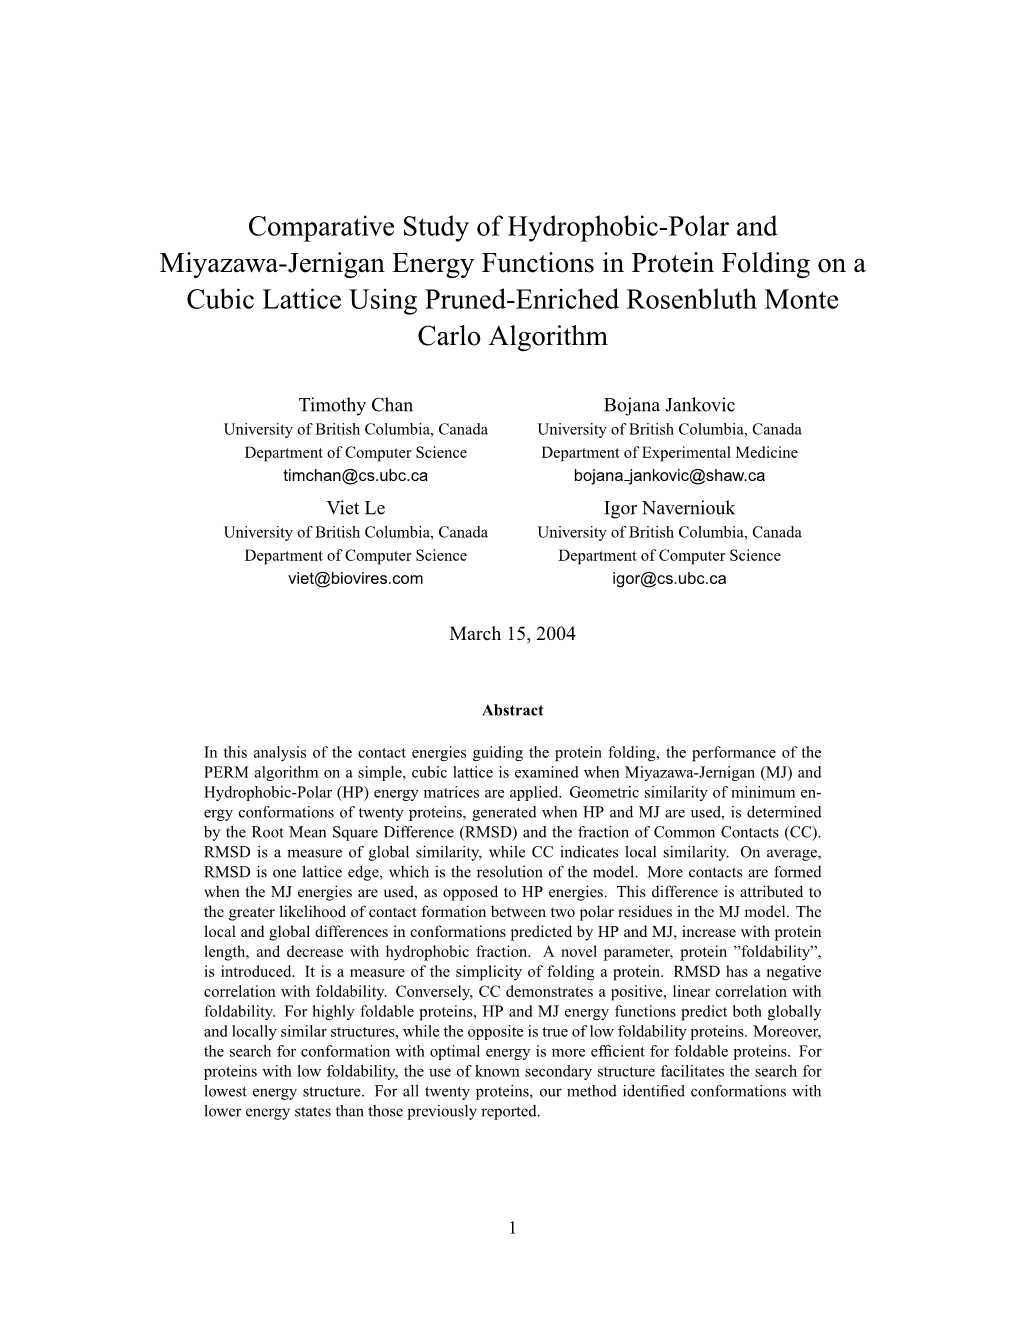 Comparative Study of Hydrophobic-Polar and Miyazawa